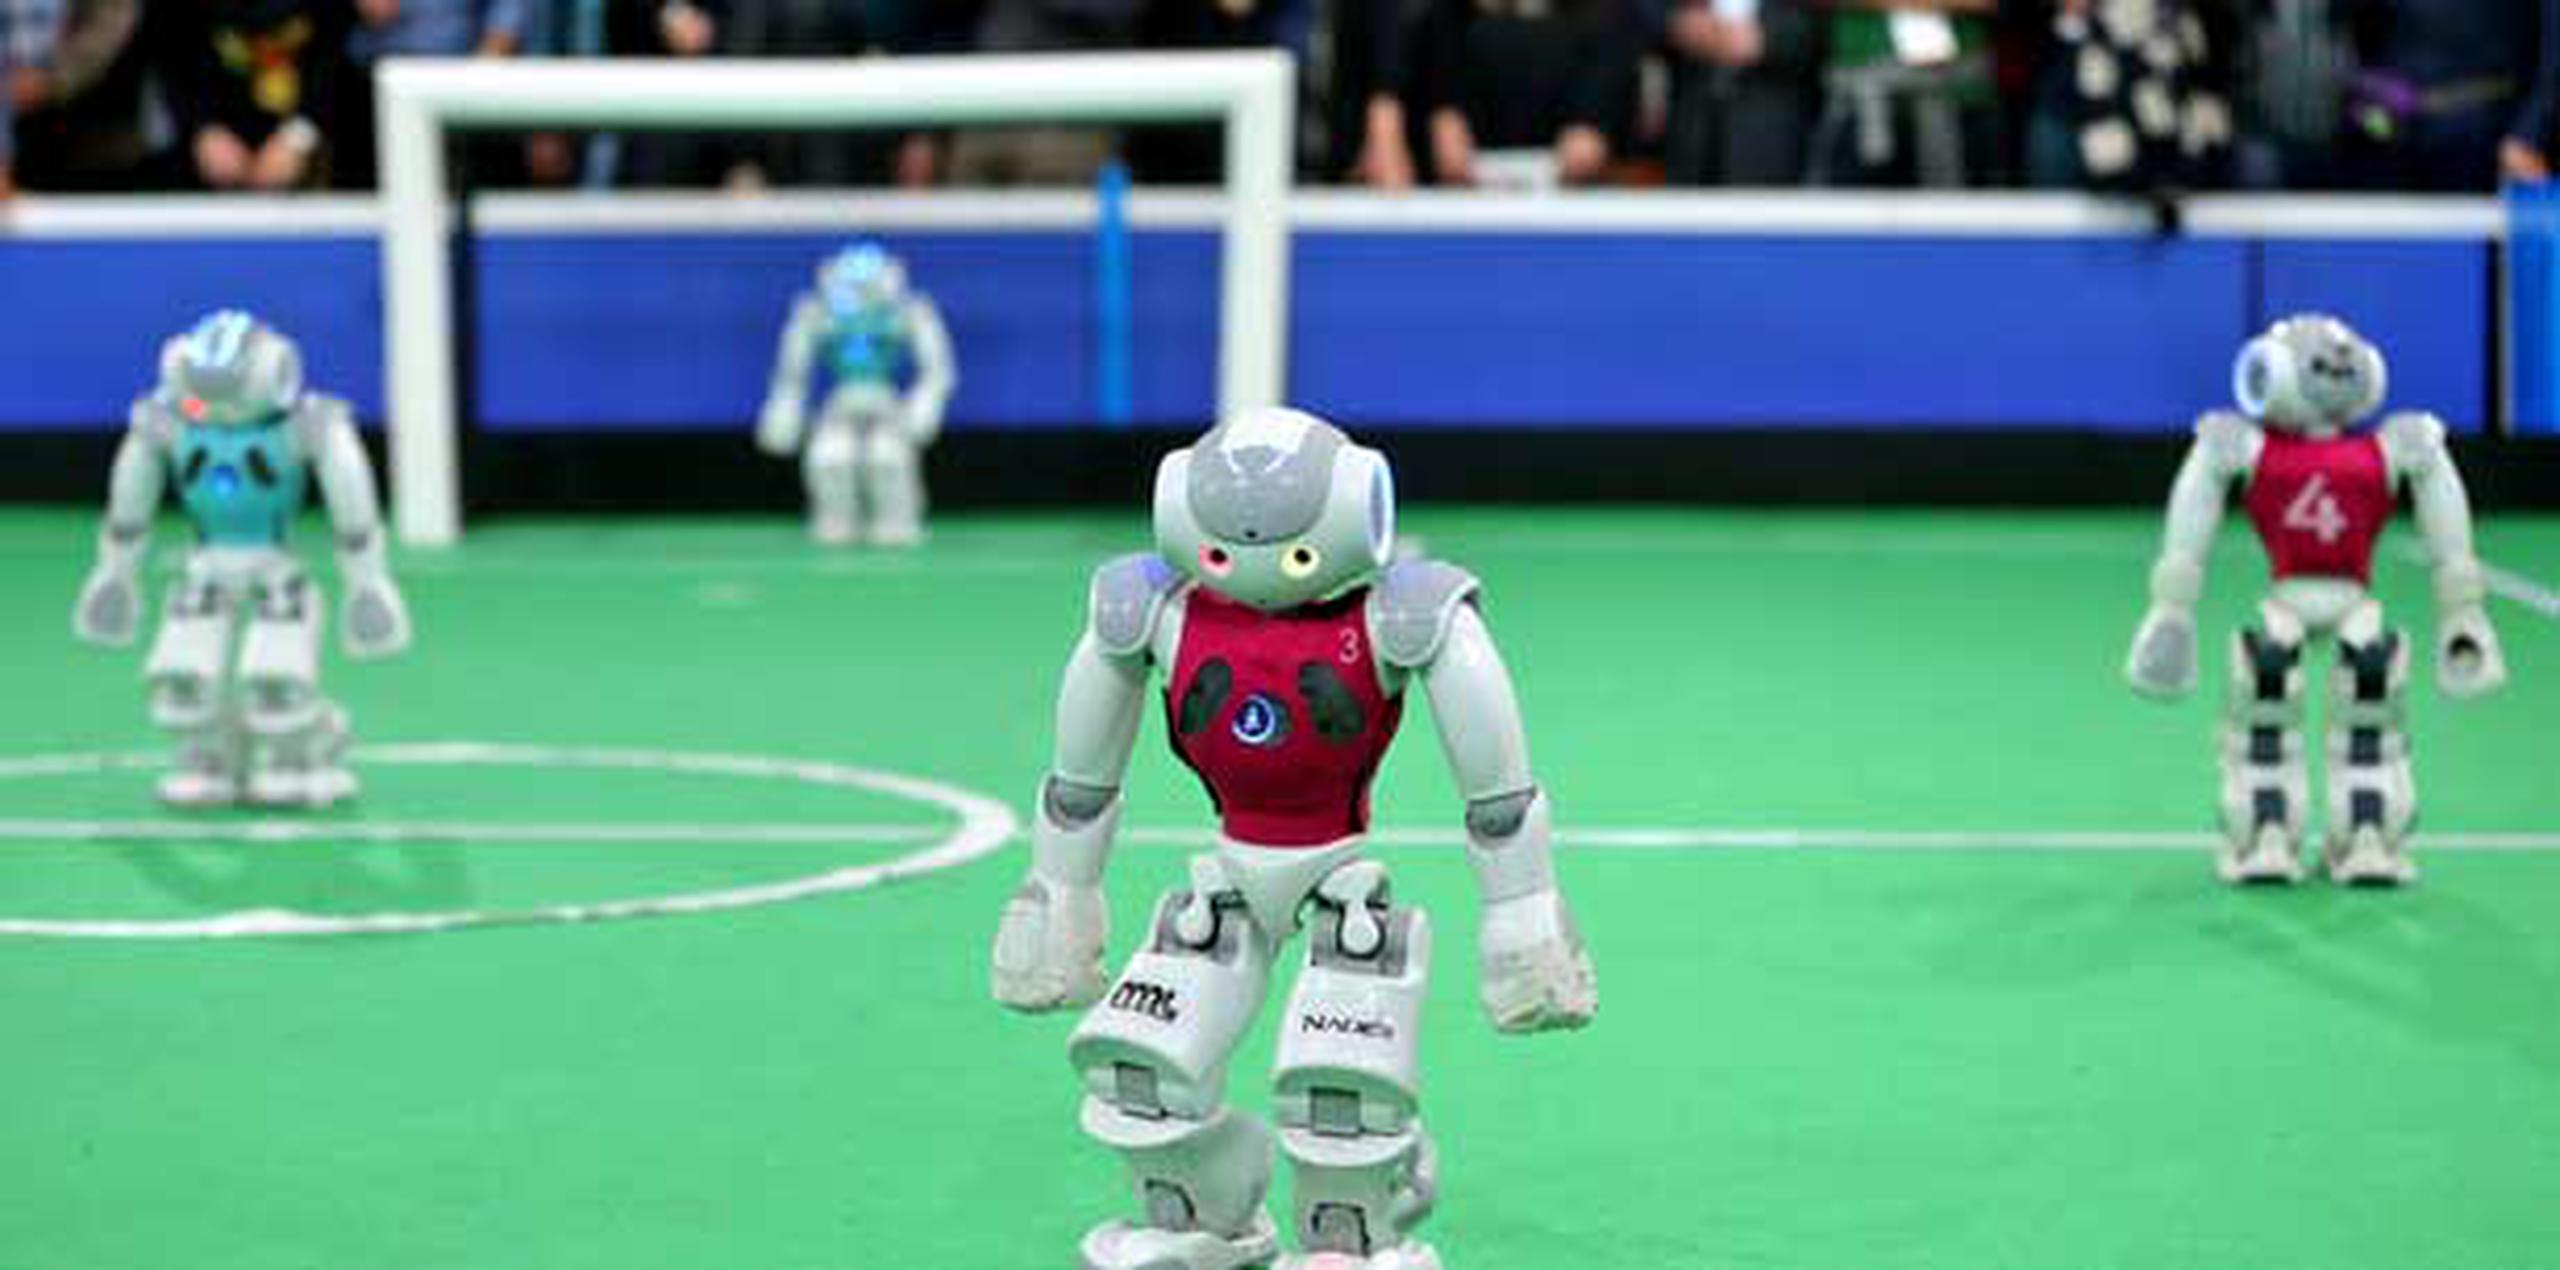 El objetivo es que para 2050 la robótica haya avanzado tanto que un equipo formado por robots pueda enfrentar a humanos, y vencerlos. (AP/Ebrahim Noroozi)